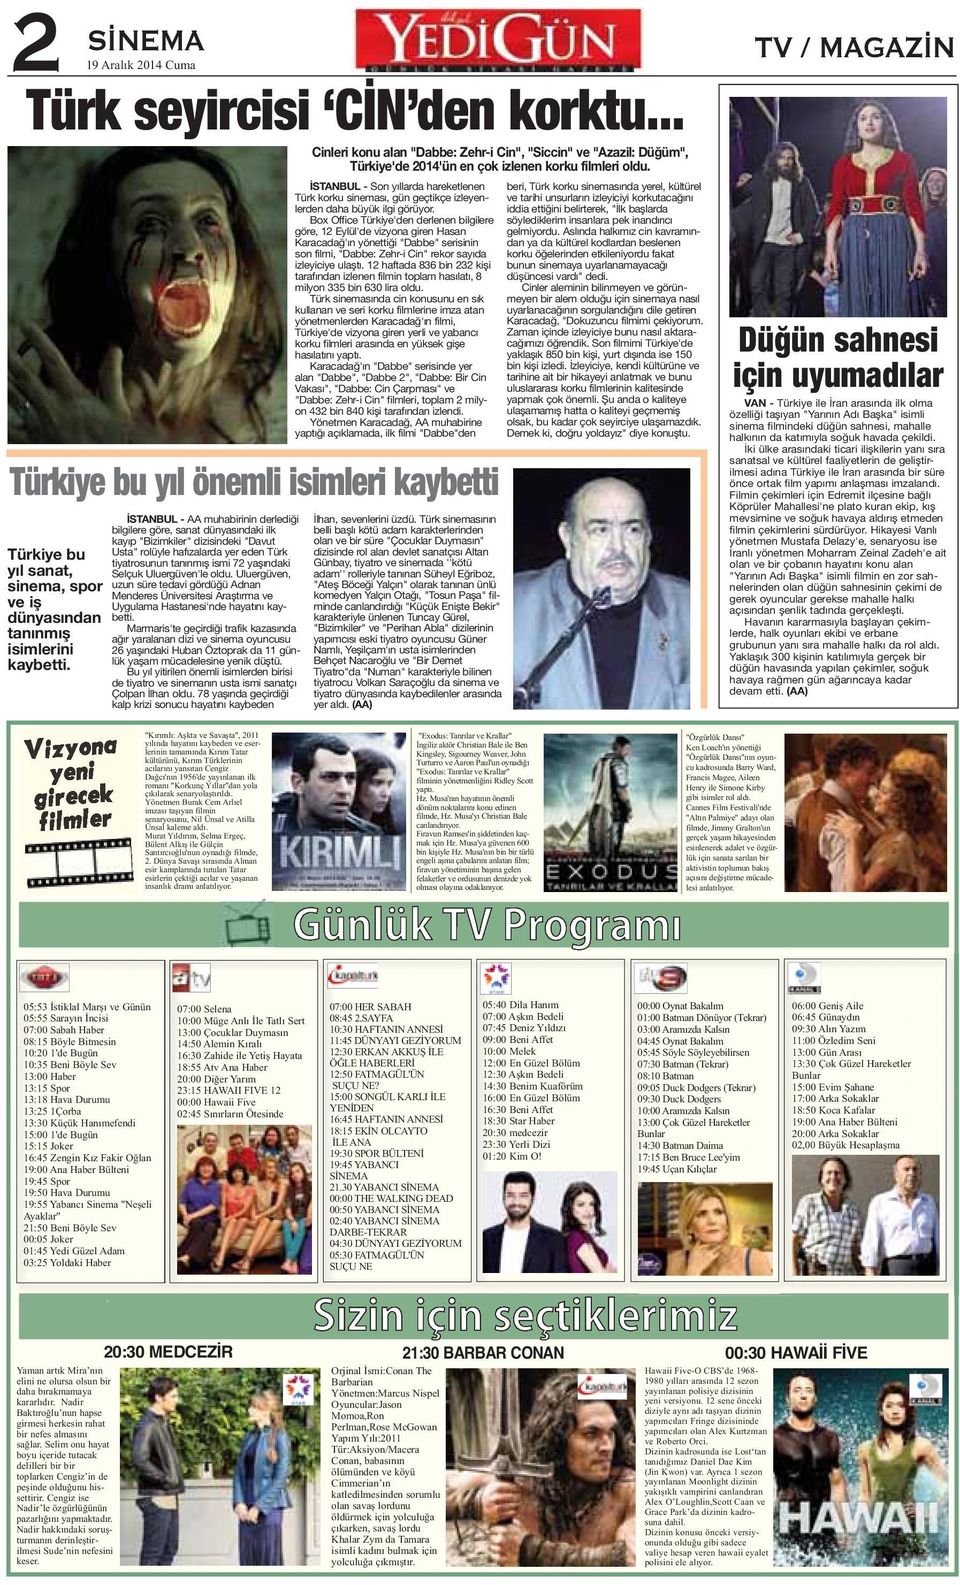 Box Office Türkiye'den derlenen bilgilere göre, 12 Eylül'de vizyona giren Hasan Karacadağ'ın yönettiği "Dabbe" serisinin son filmi, "Dabbe: Zehr-i Cin" rekor sayıda izleyiciye ulaştı.